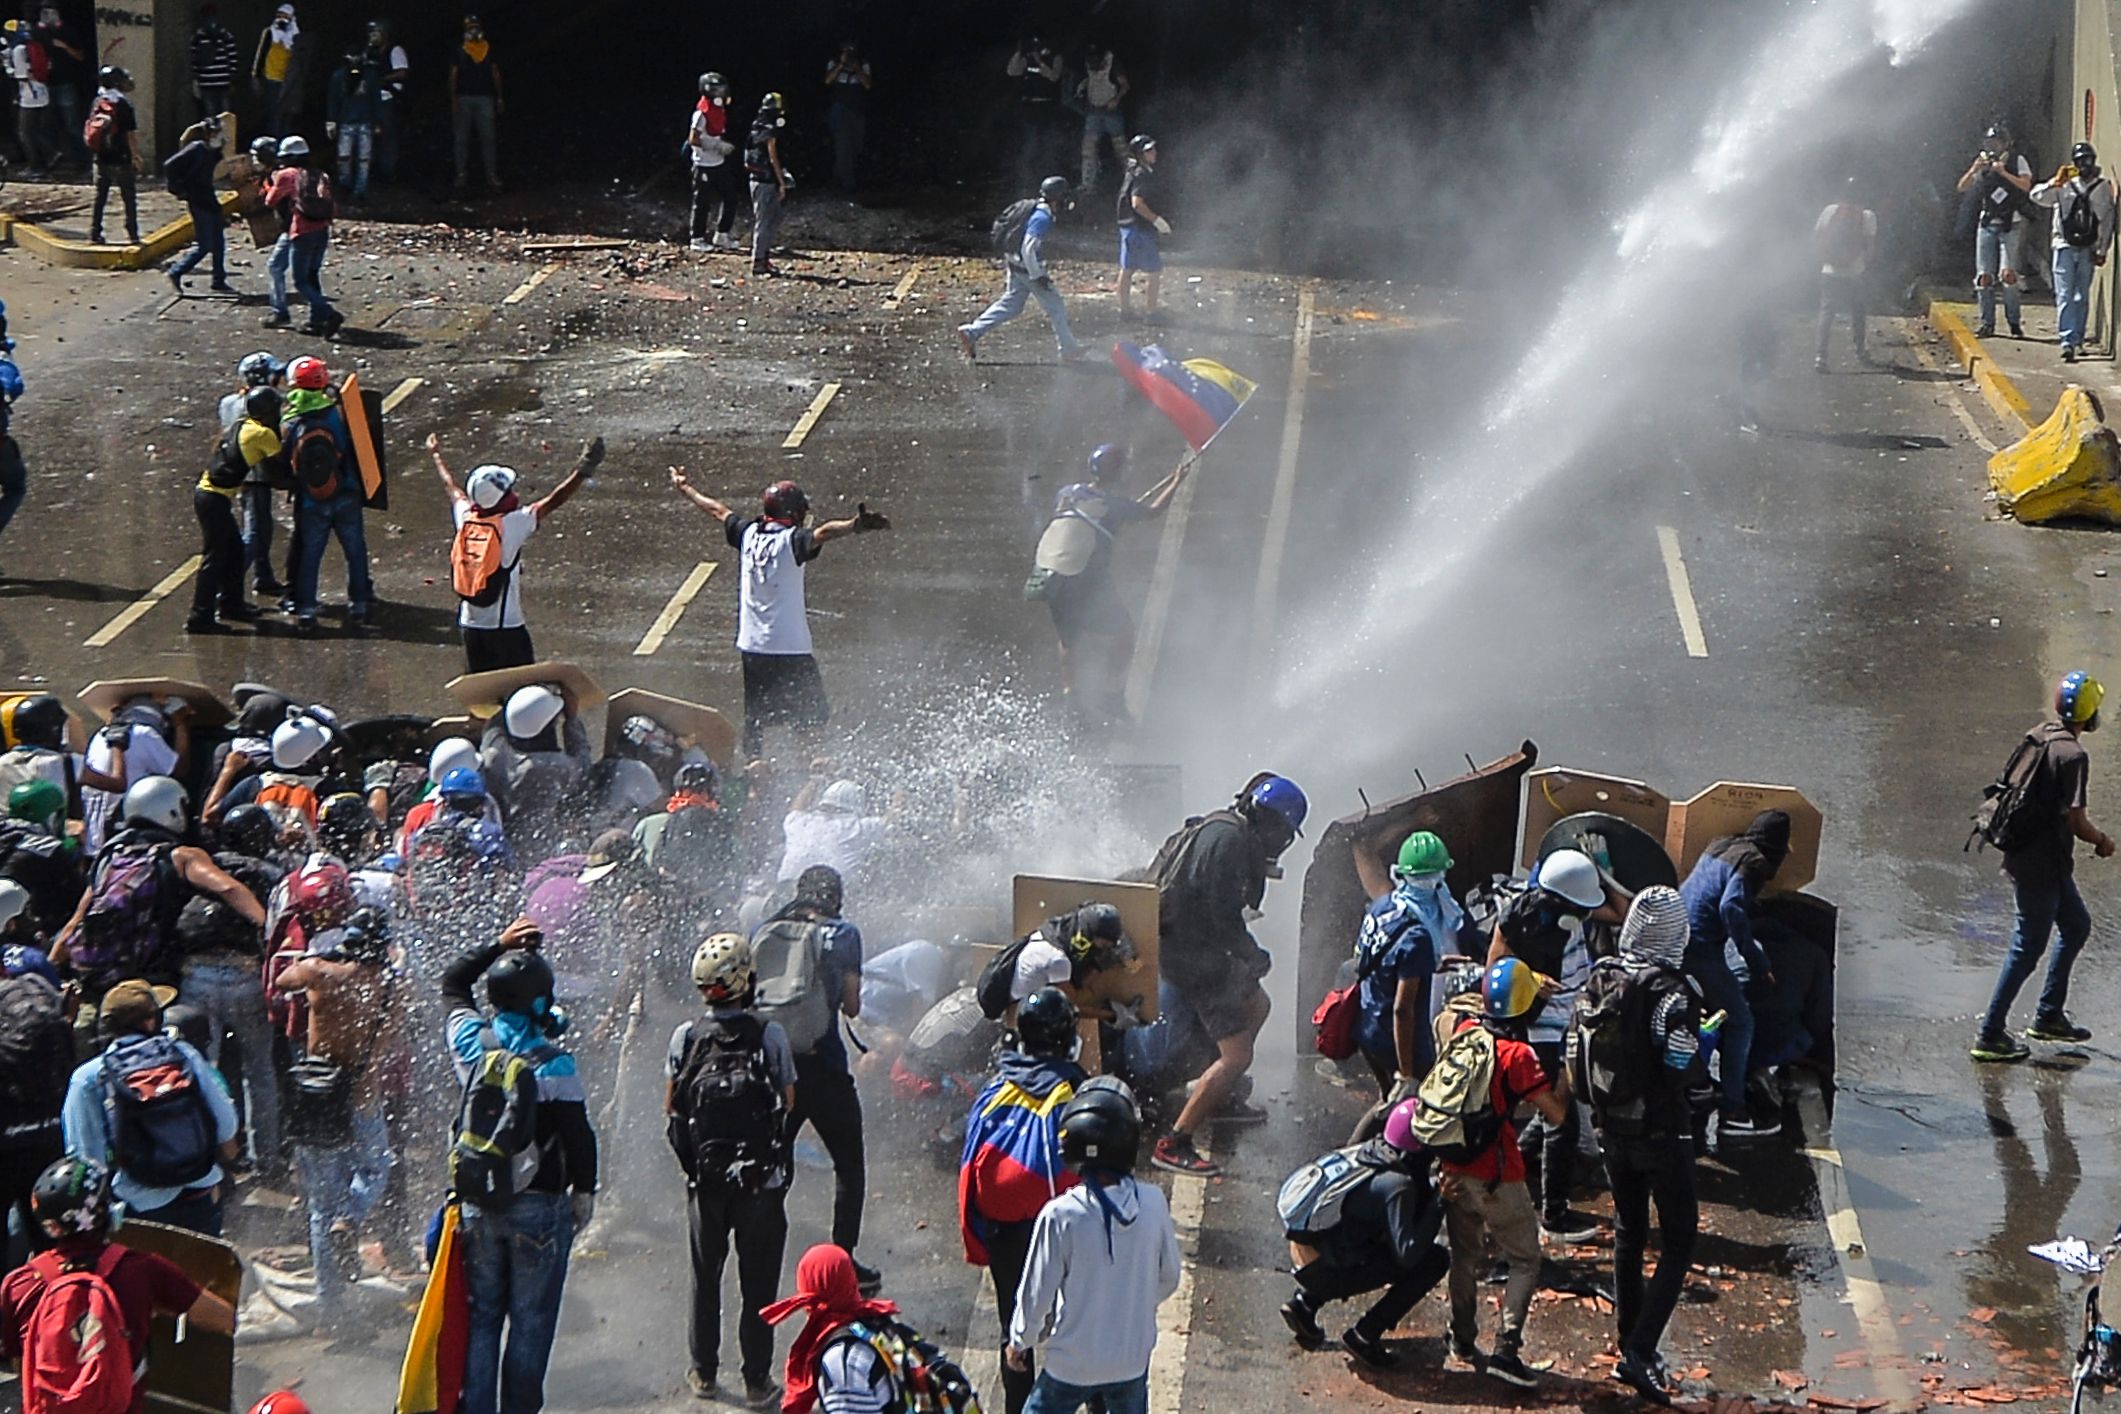 اطلاق رشاشات المياه ضد المحتجين